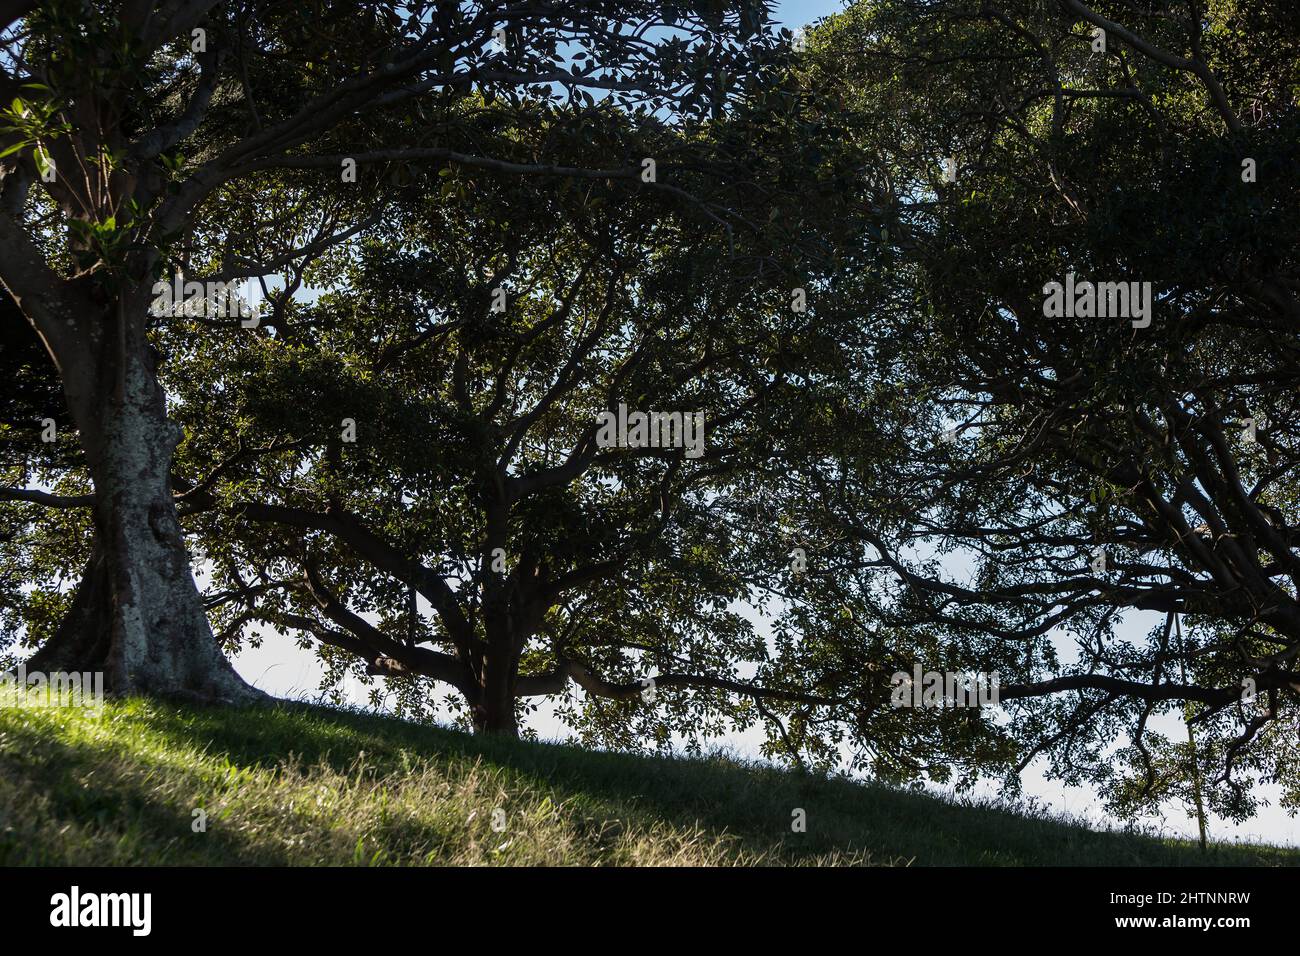 Bellevue Park, Bellevue Hill, Sydney, Australien. Moreton Bay Feigenbäume dominieren diesen Park. Stockfoto